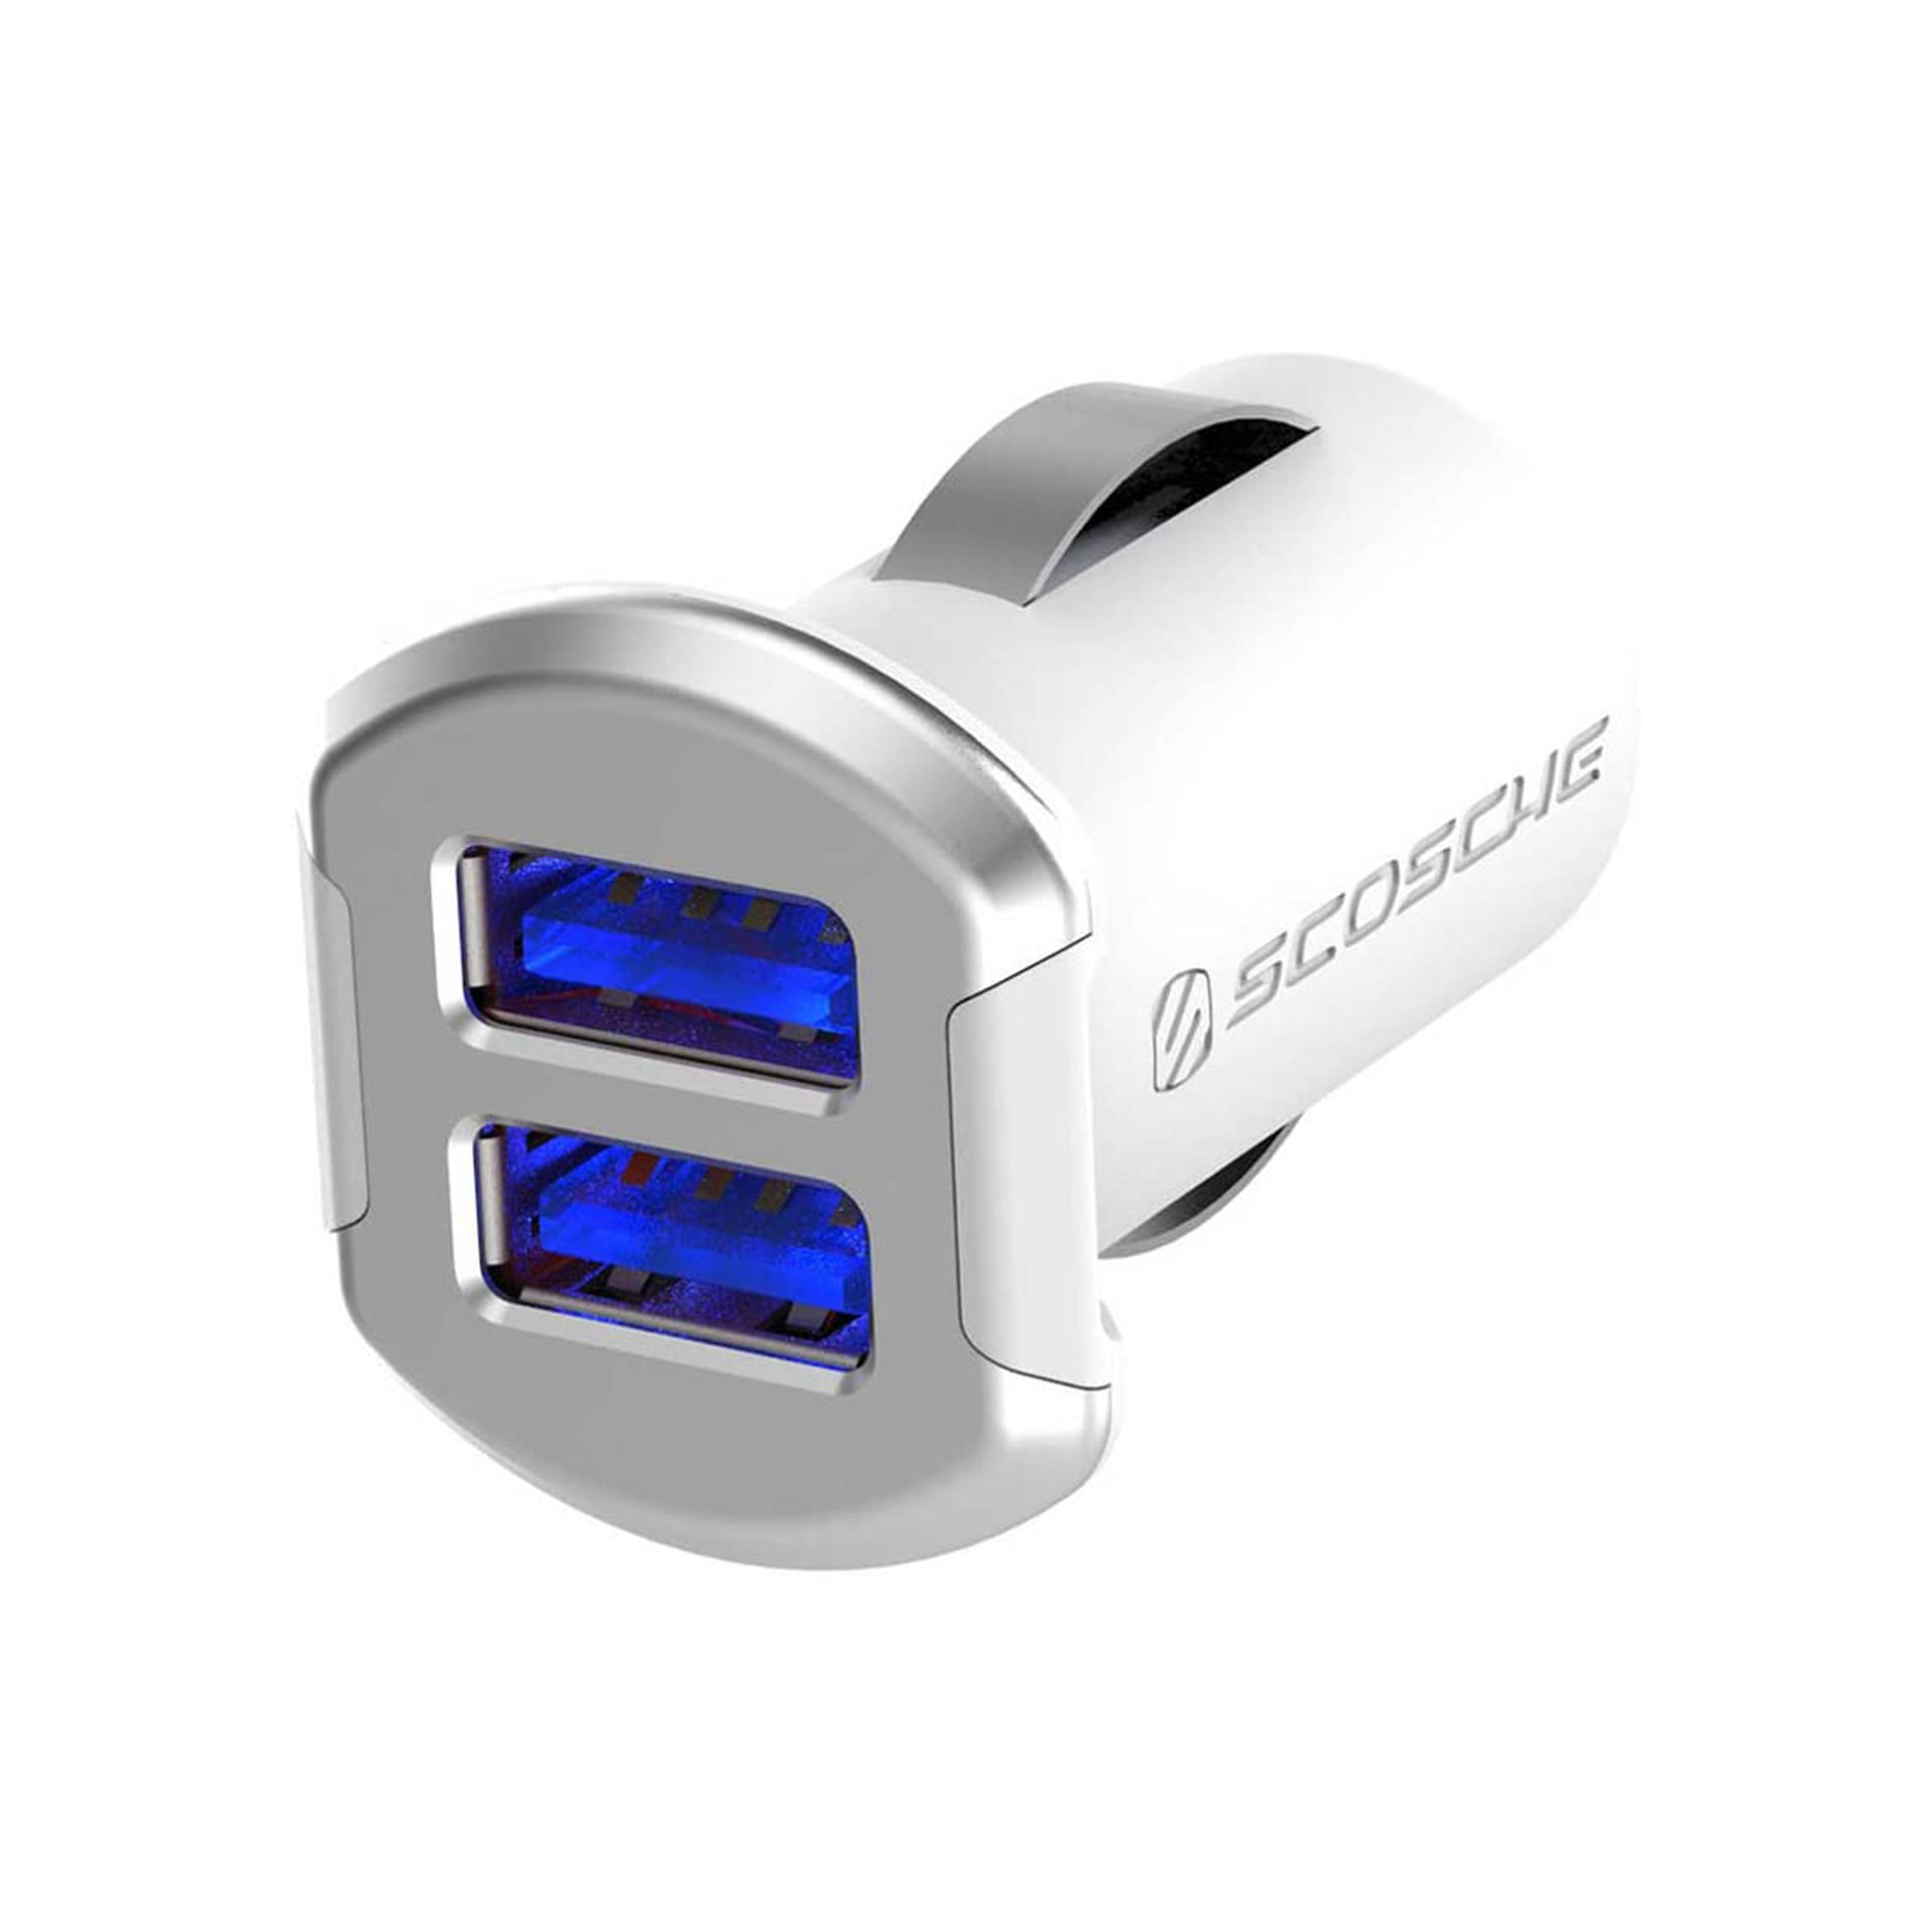 Scosche USBC242MSR, Dual 12W USB Car Charger w/Illuminatged USB Ports (Silver/White)